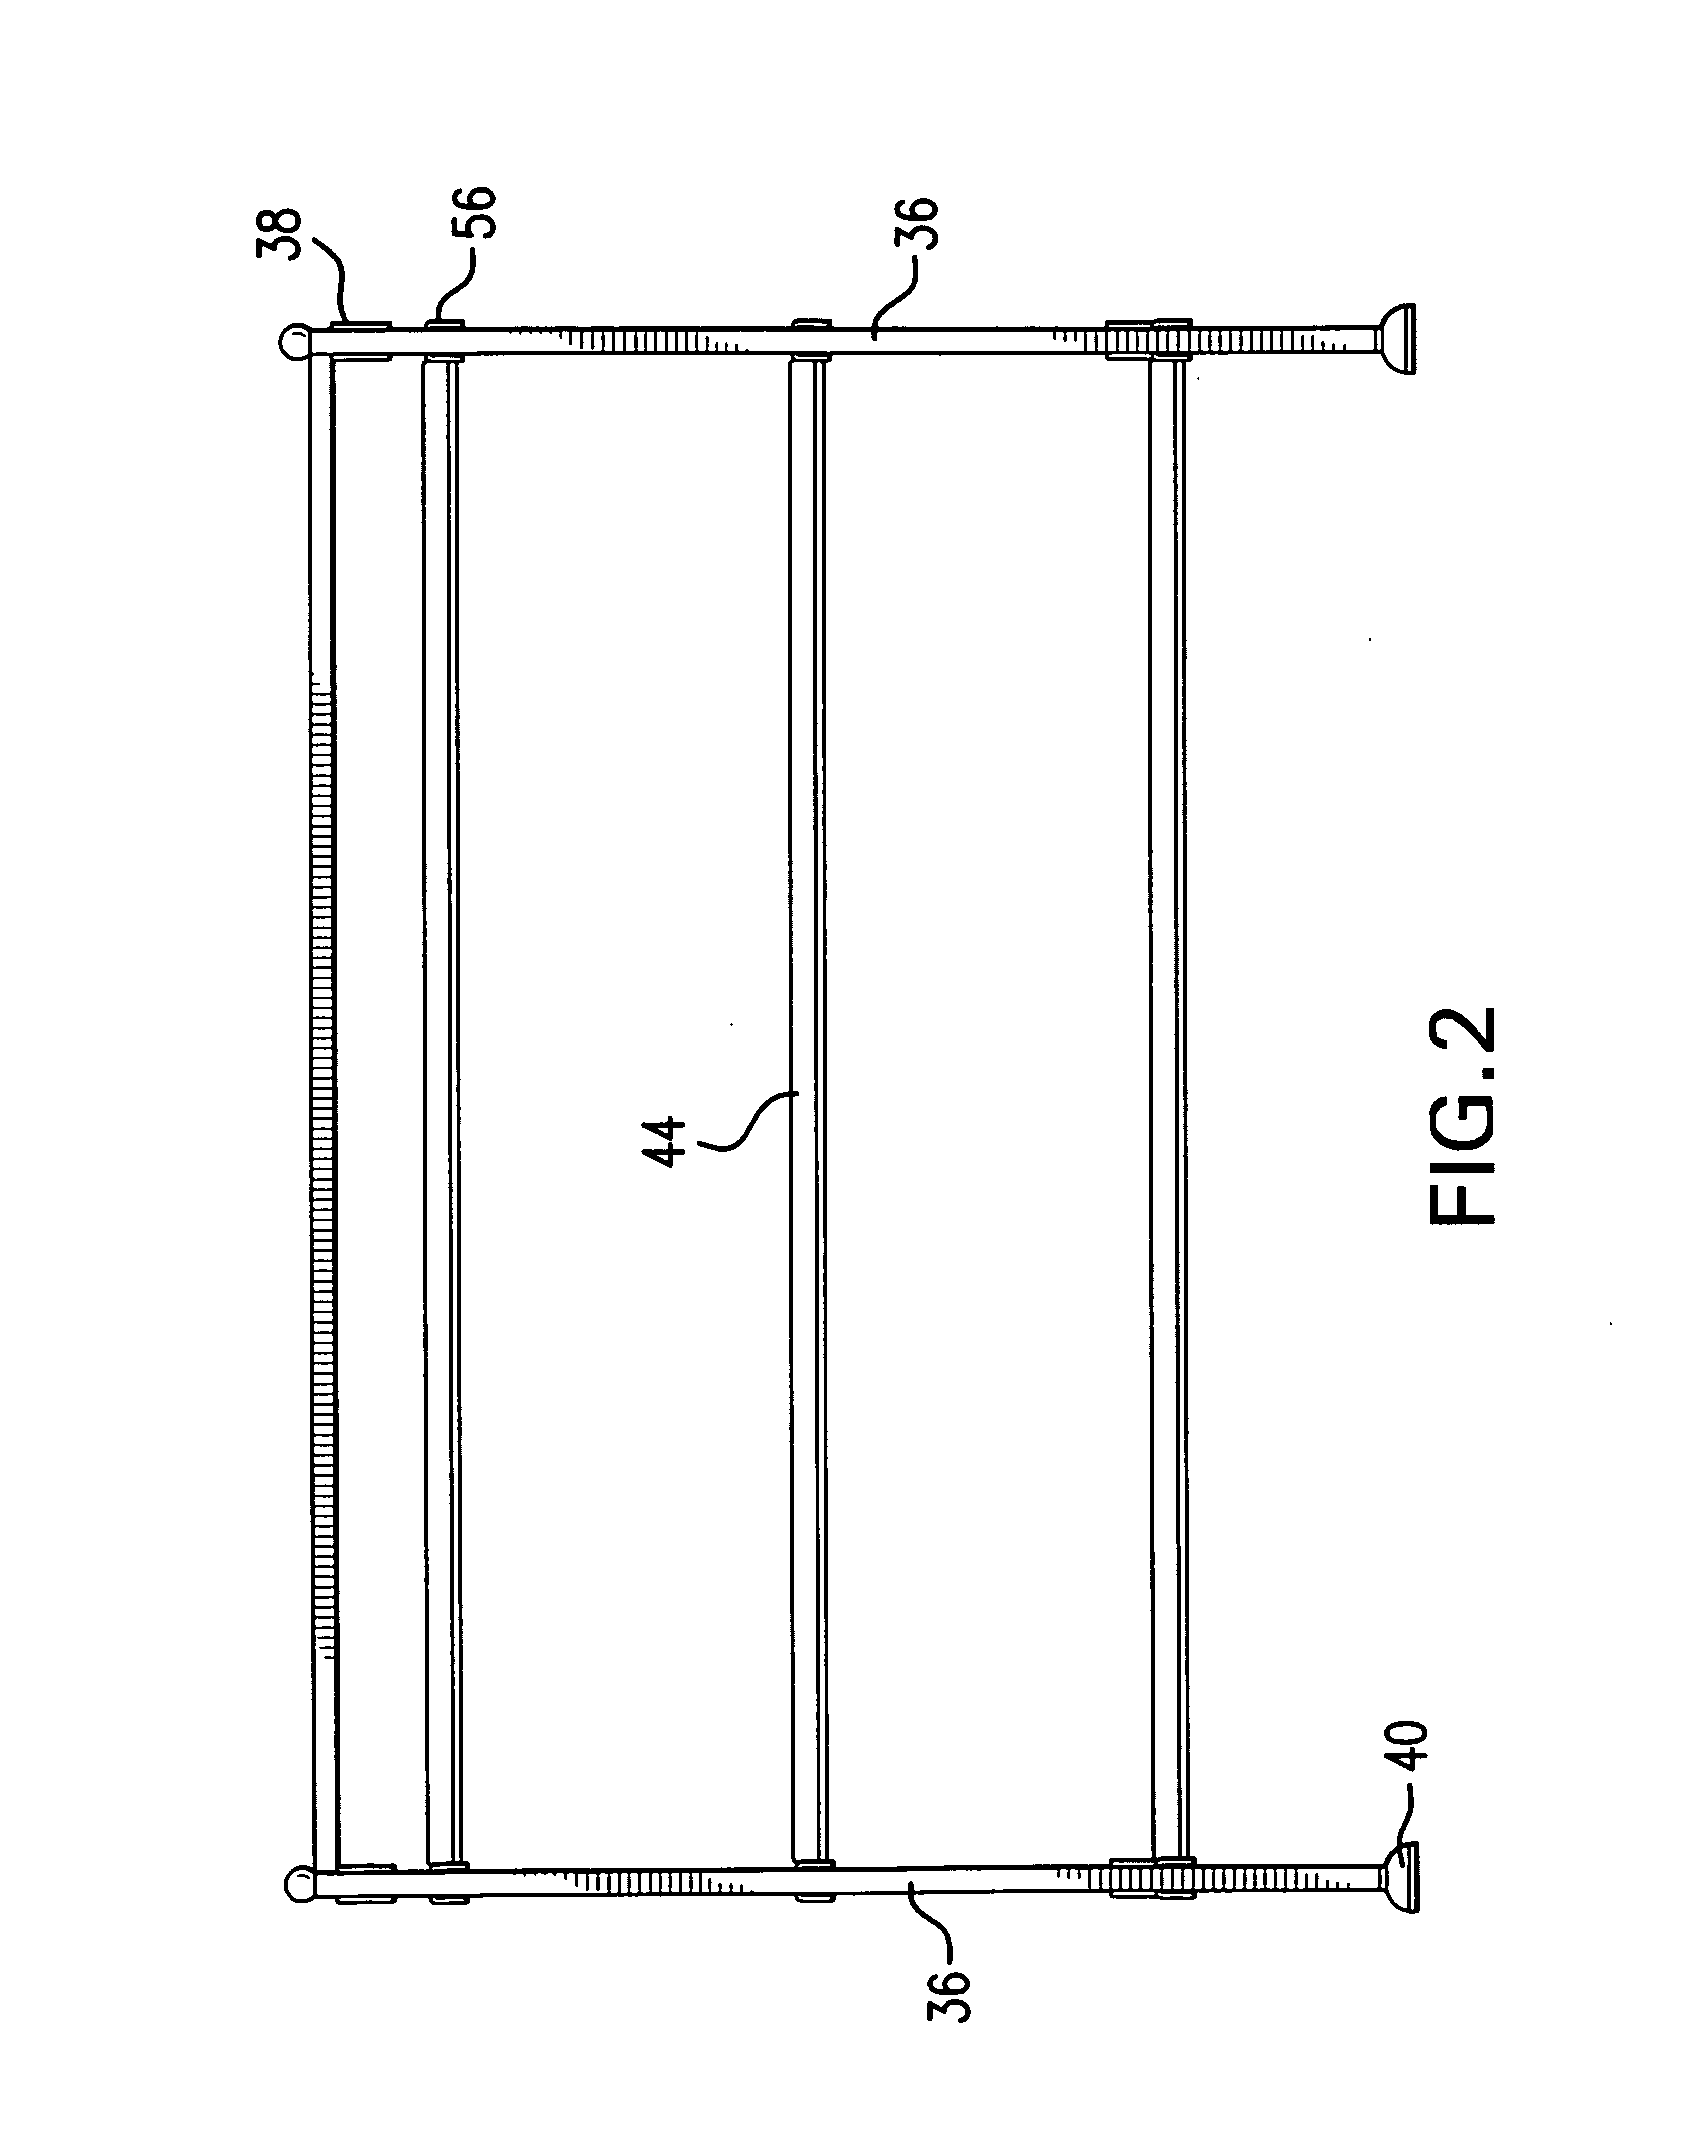 Modular utility rack